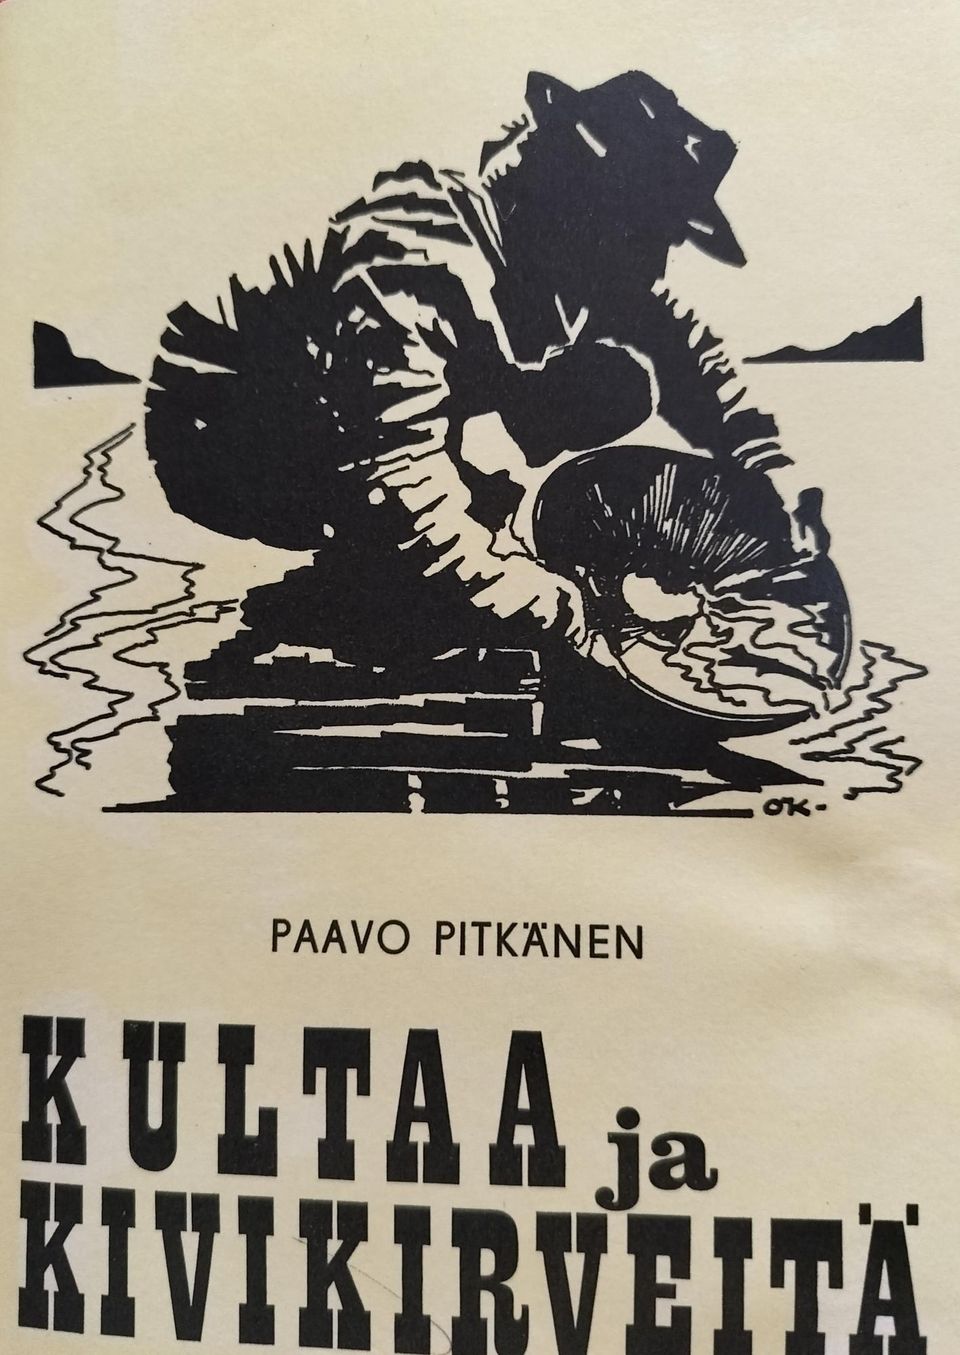 Paavo Pitkänen KULTAAjaKIVIKIRVEITÄ